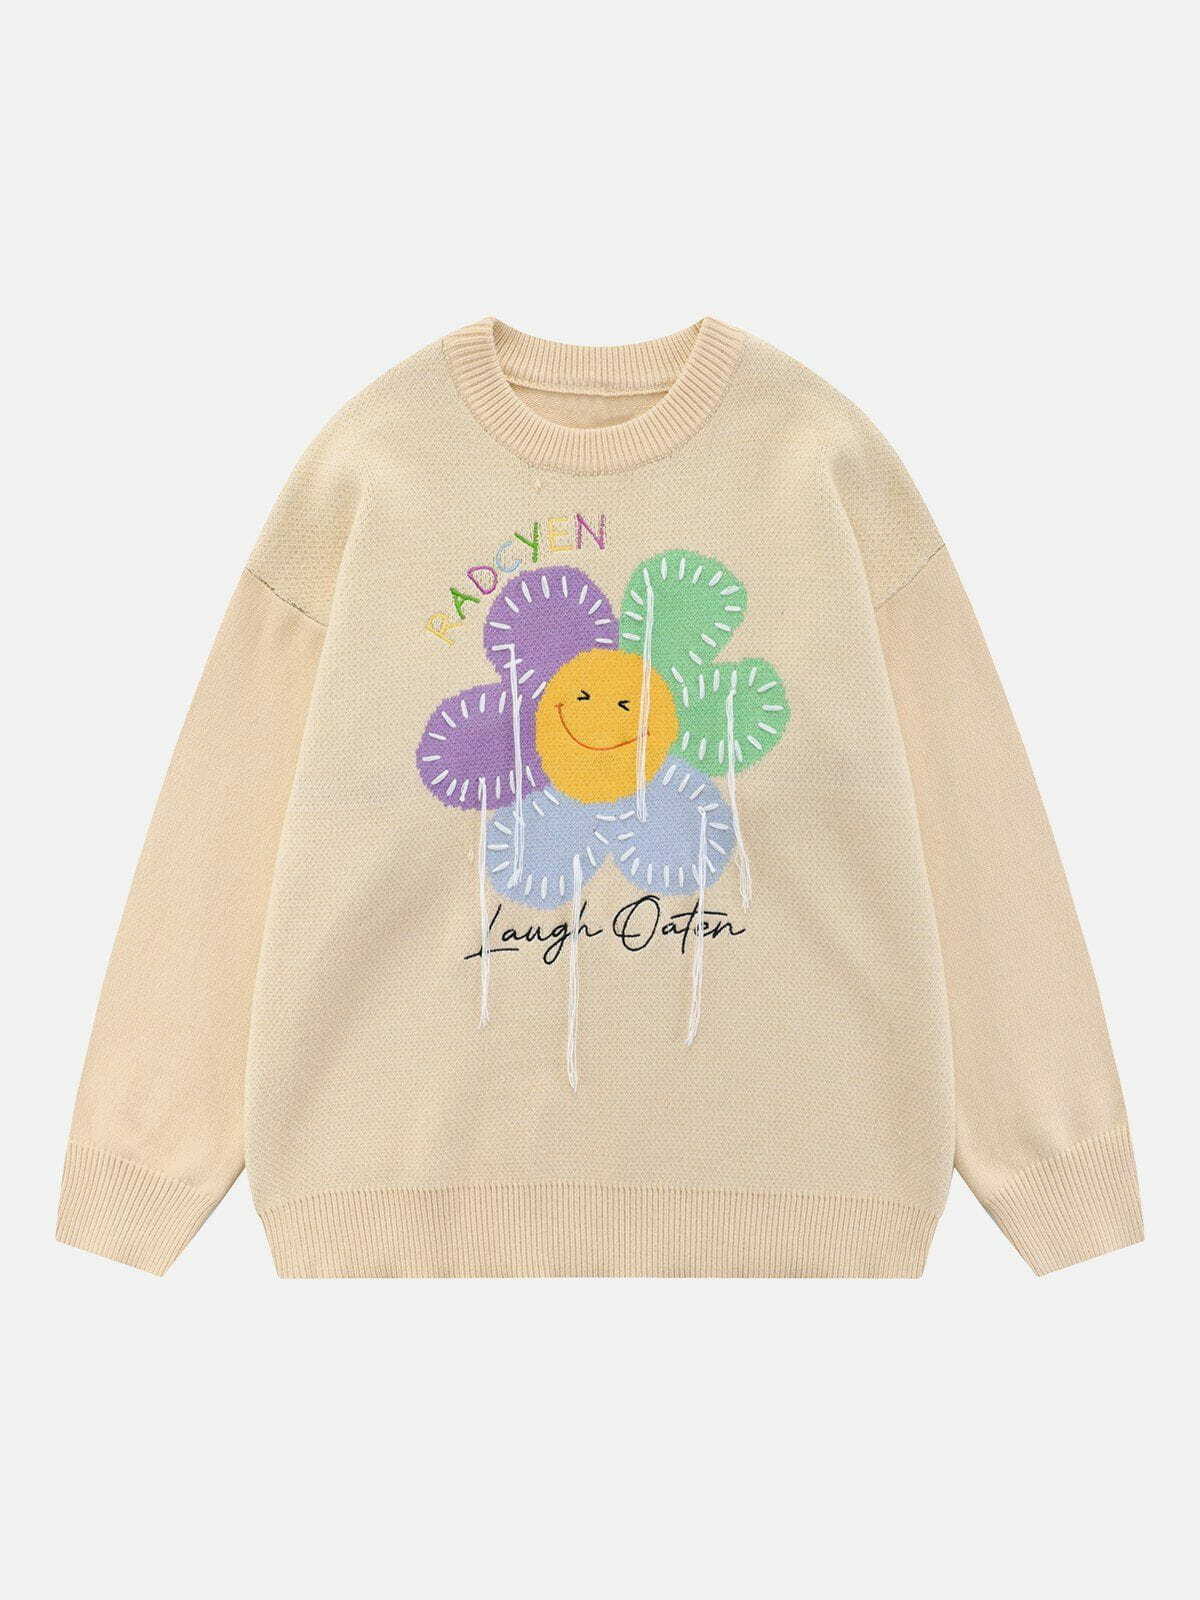 graphic sunflower sweater retro streetwear statement 8337